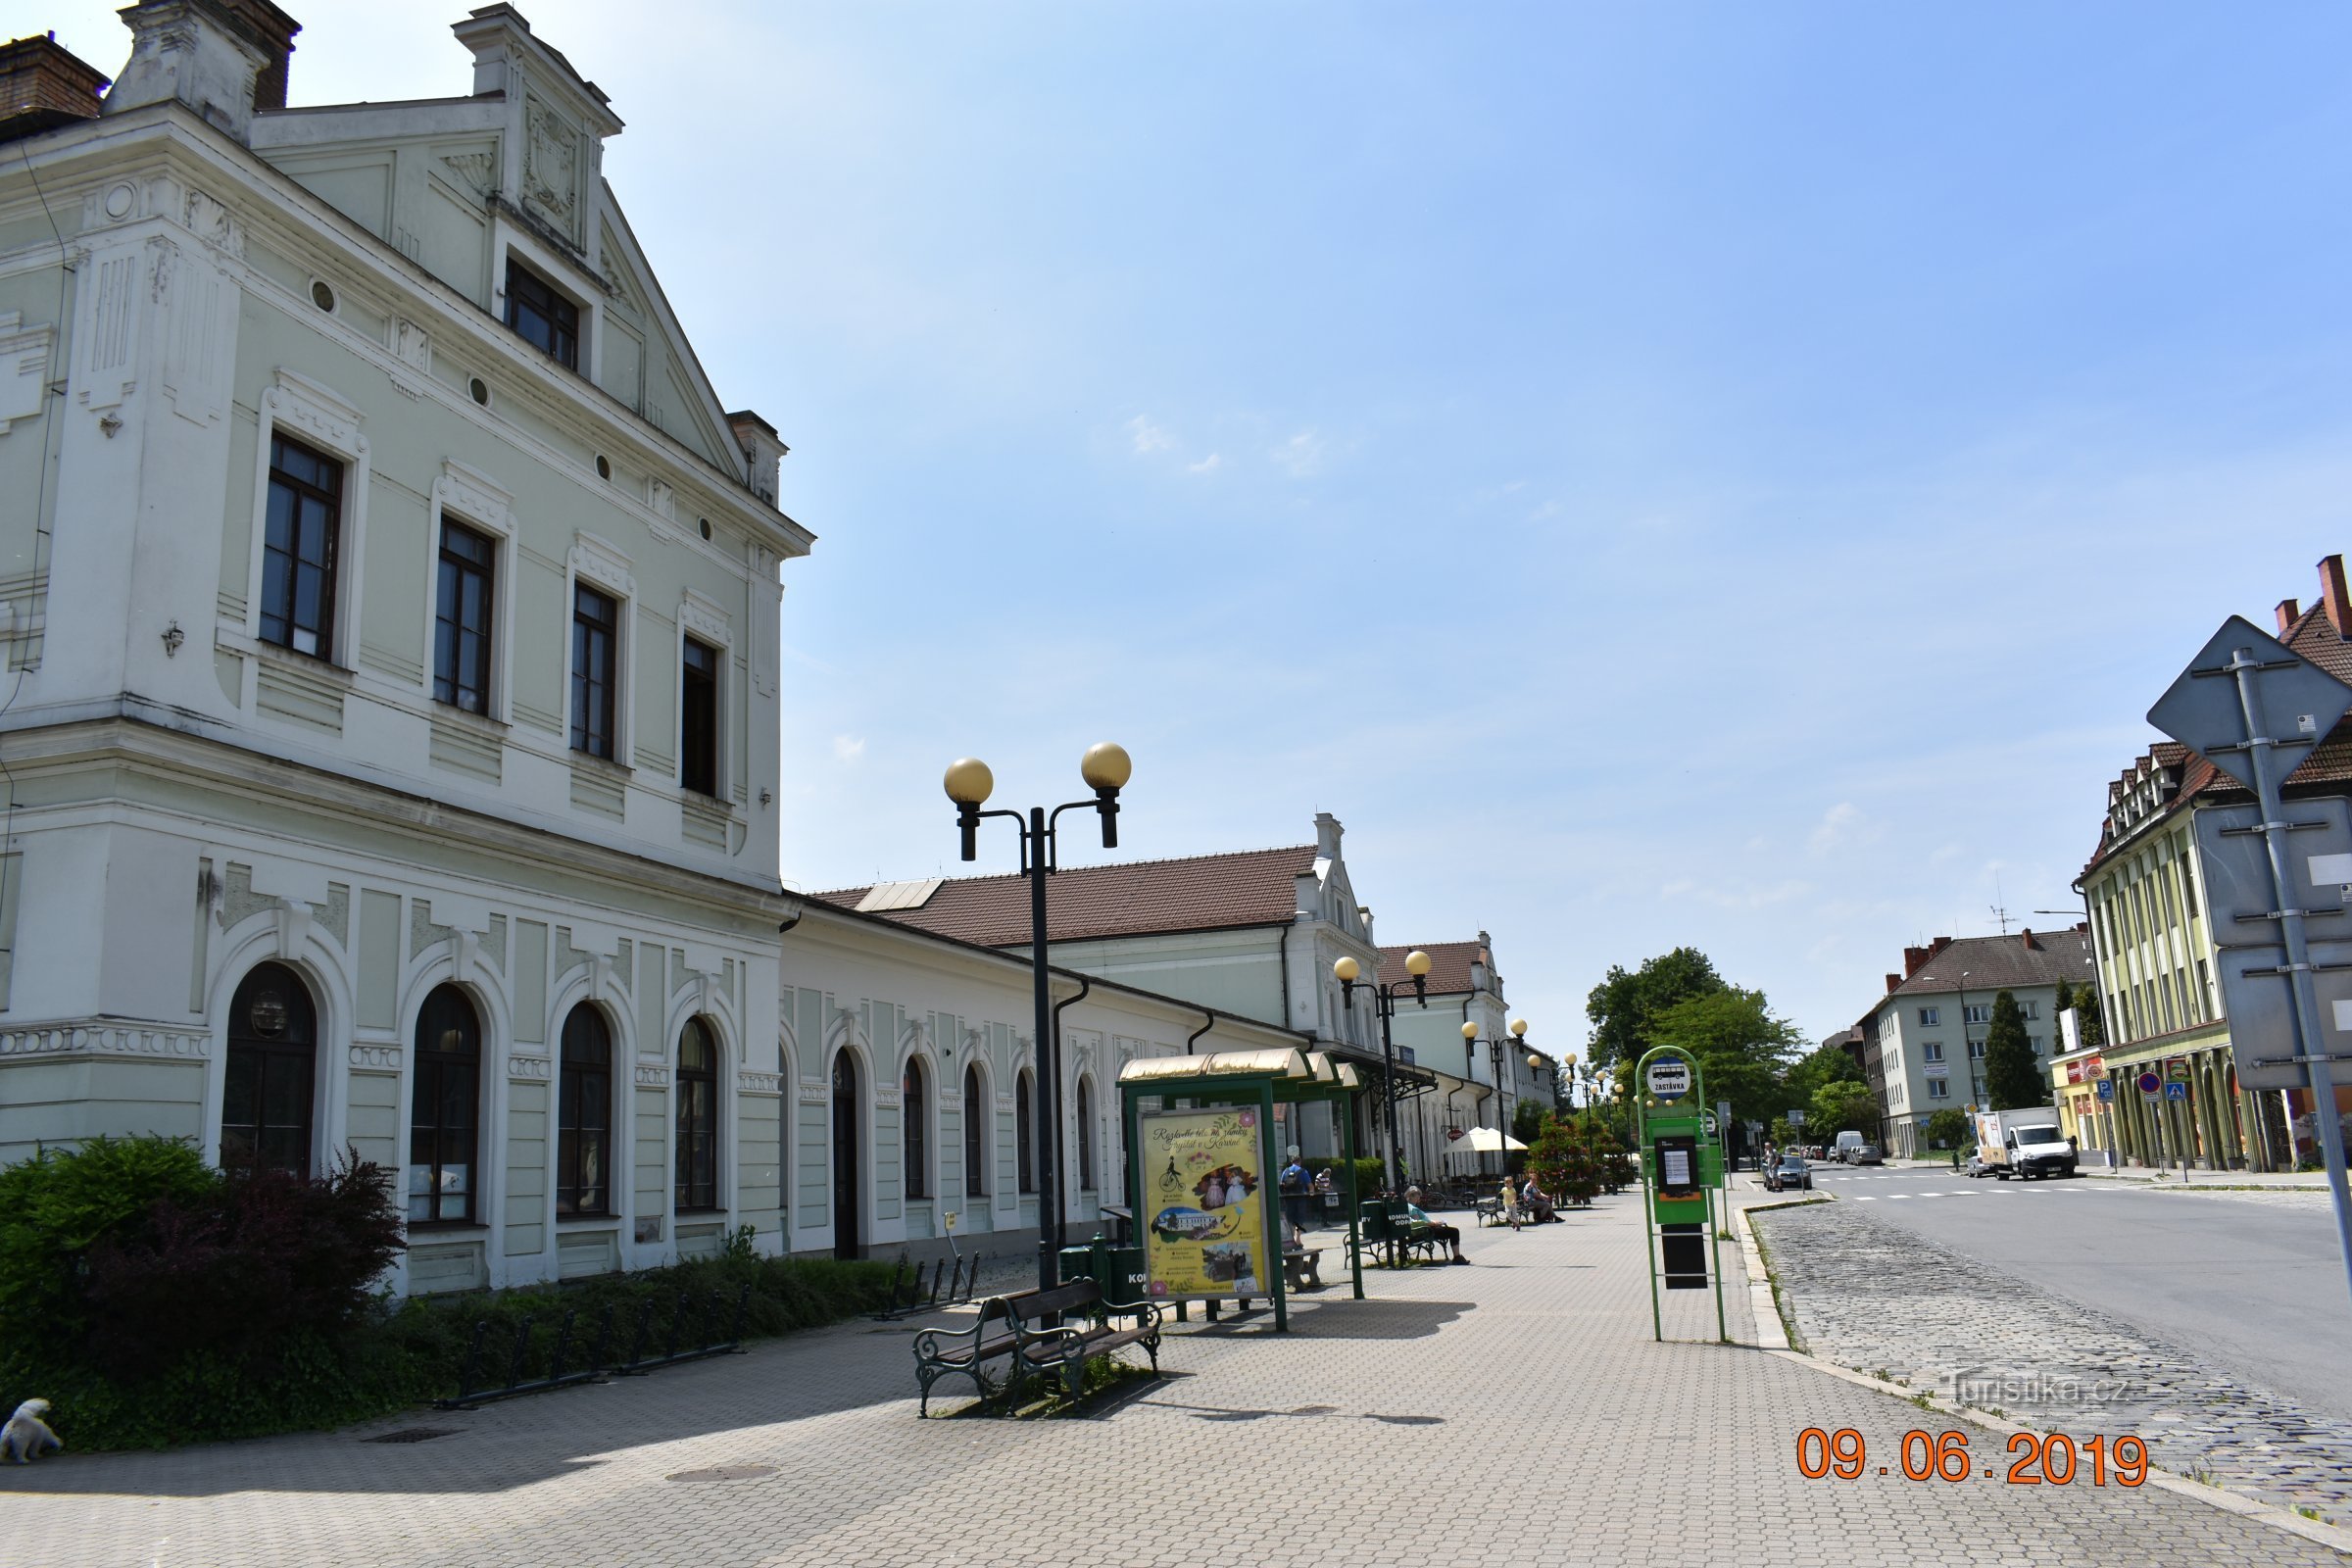 Odpremna zgradba železniške postaje Bohumín